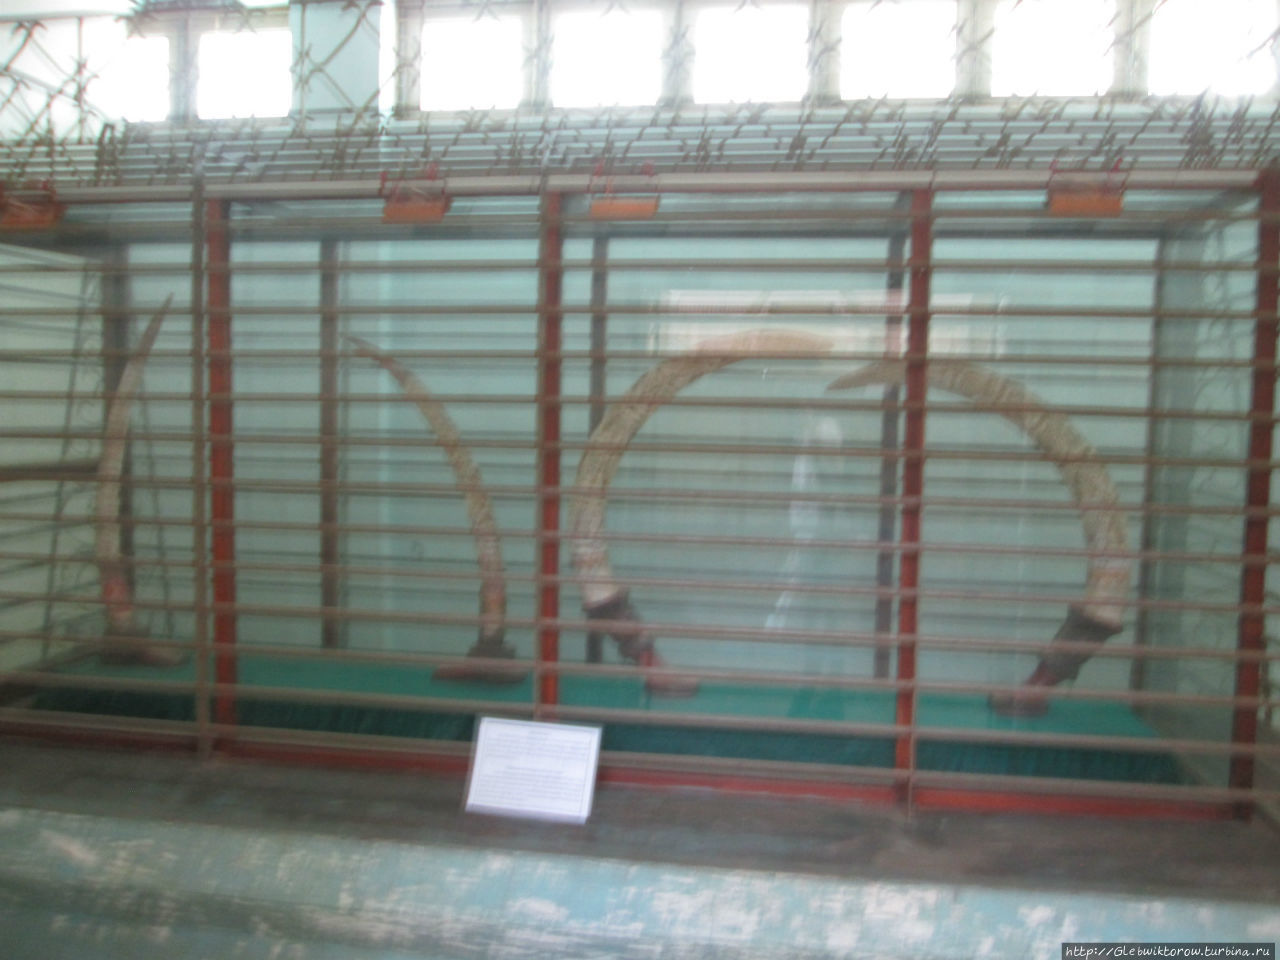 Музей Культуры каренов Хпа-Ан, Мьянма